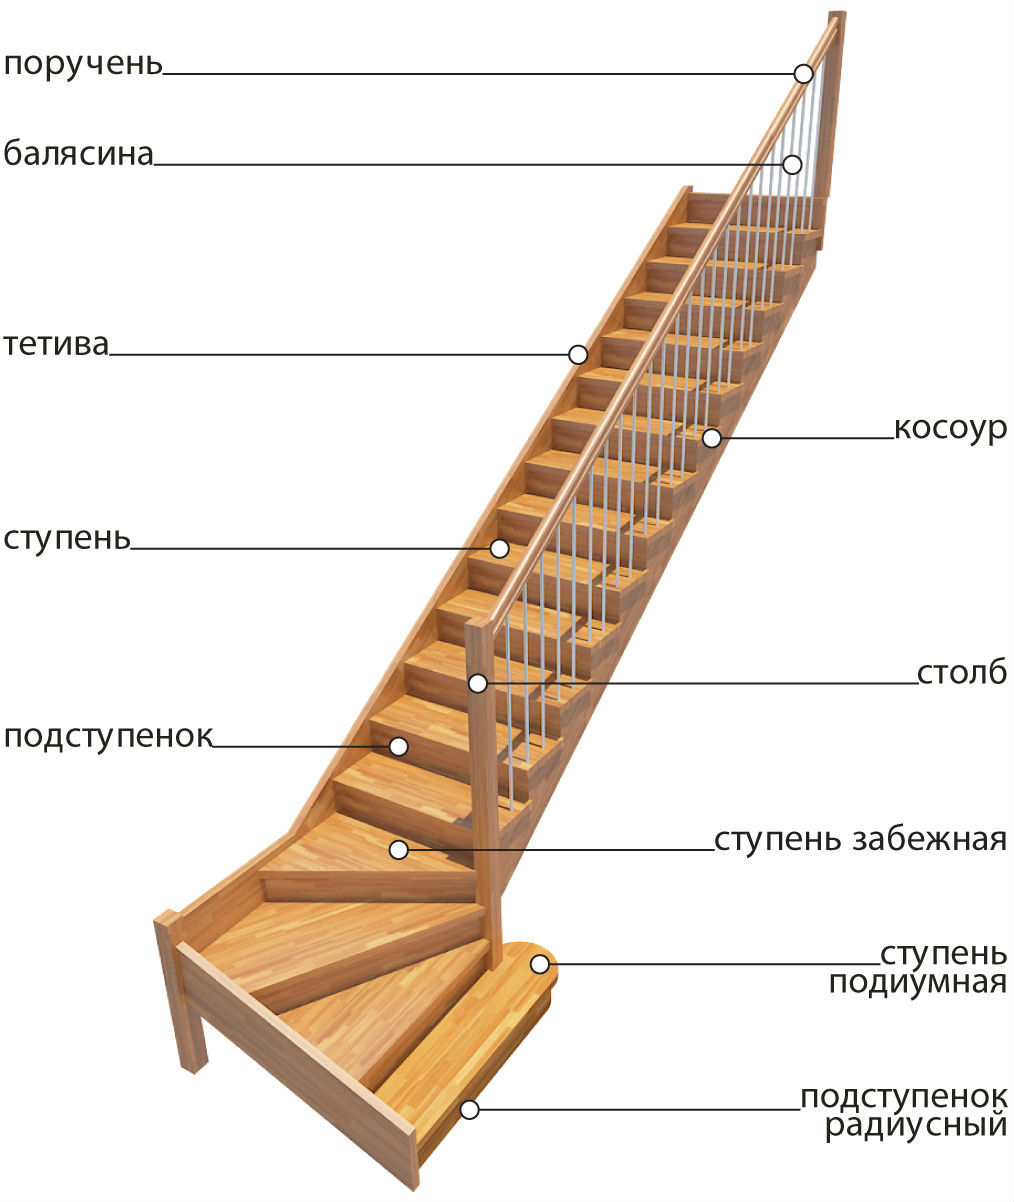 лестница основные элементы